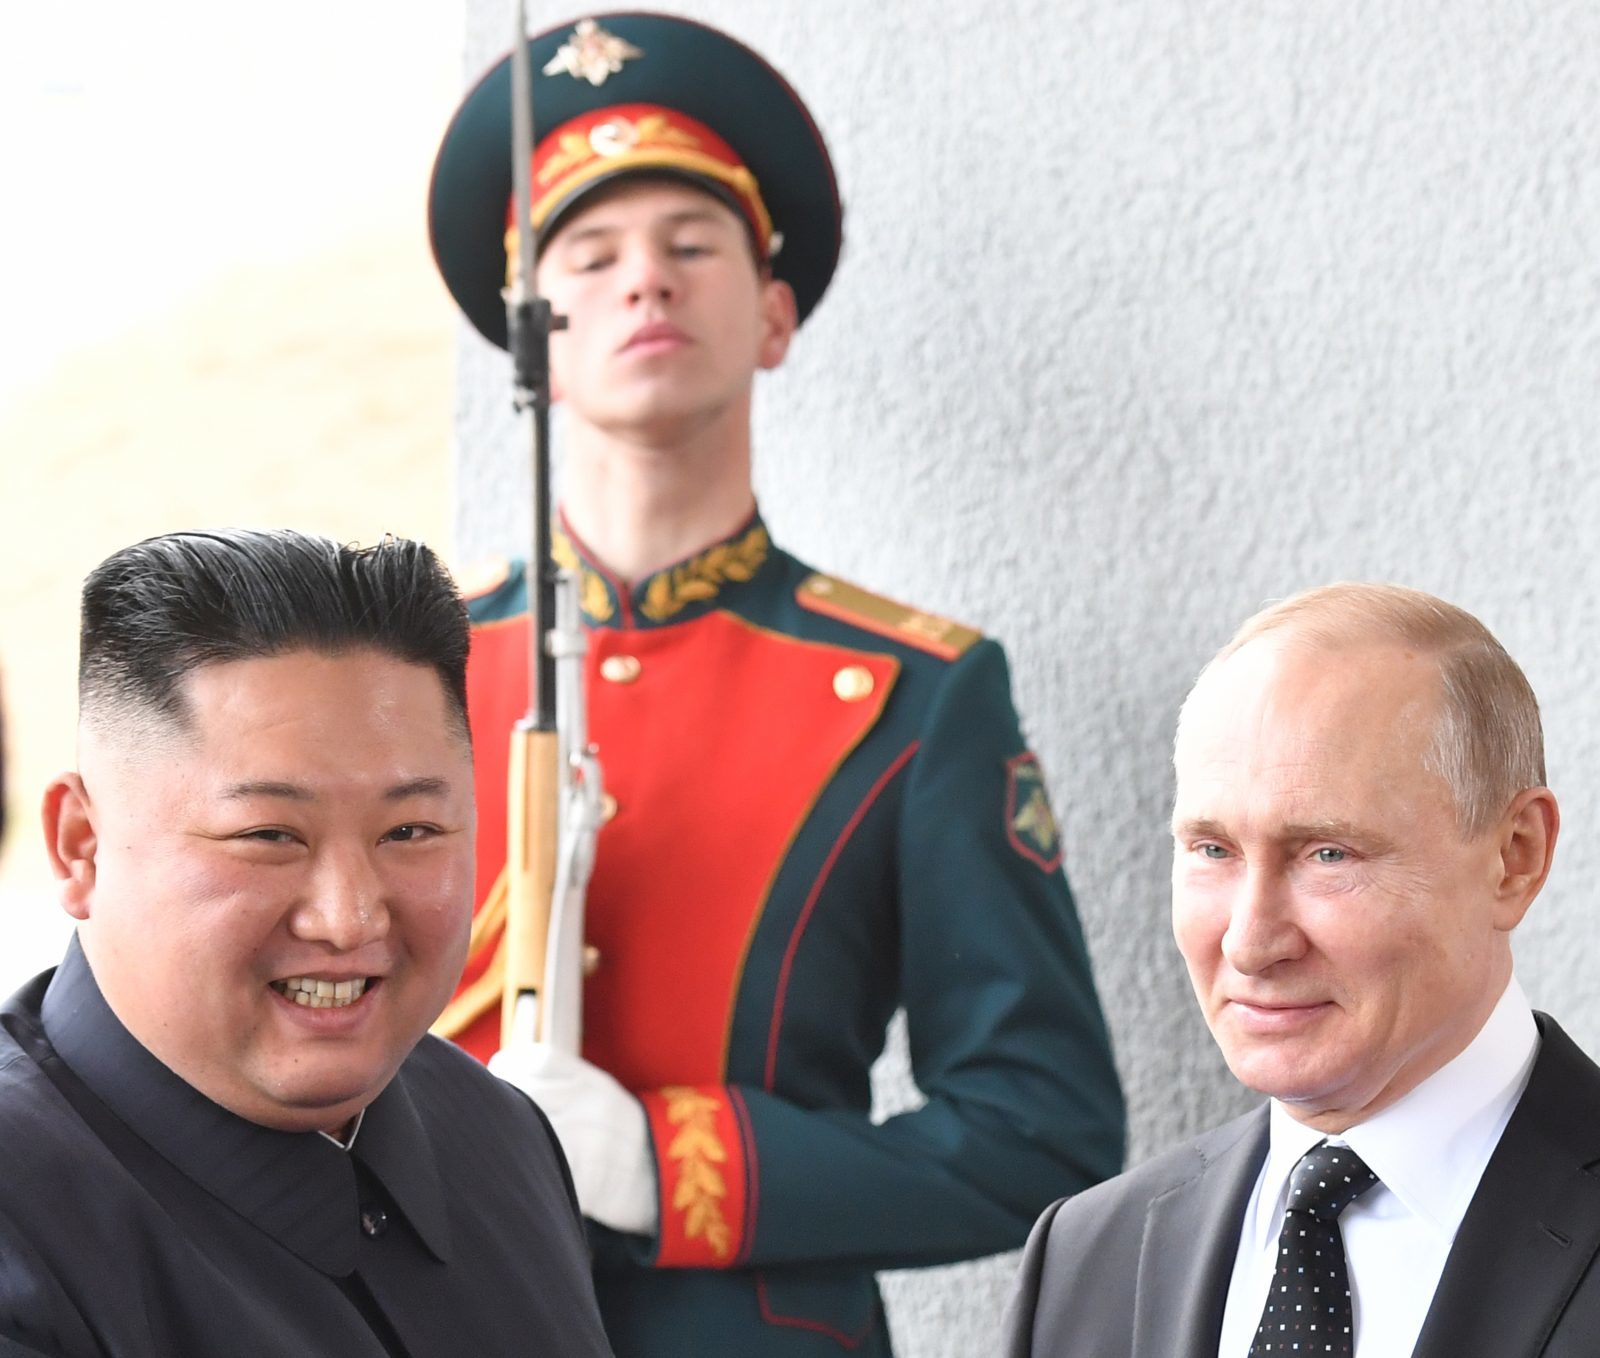 Putin Kim